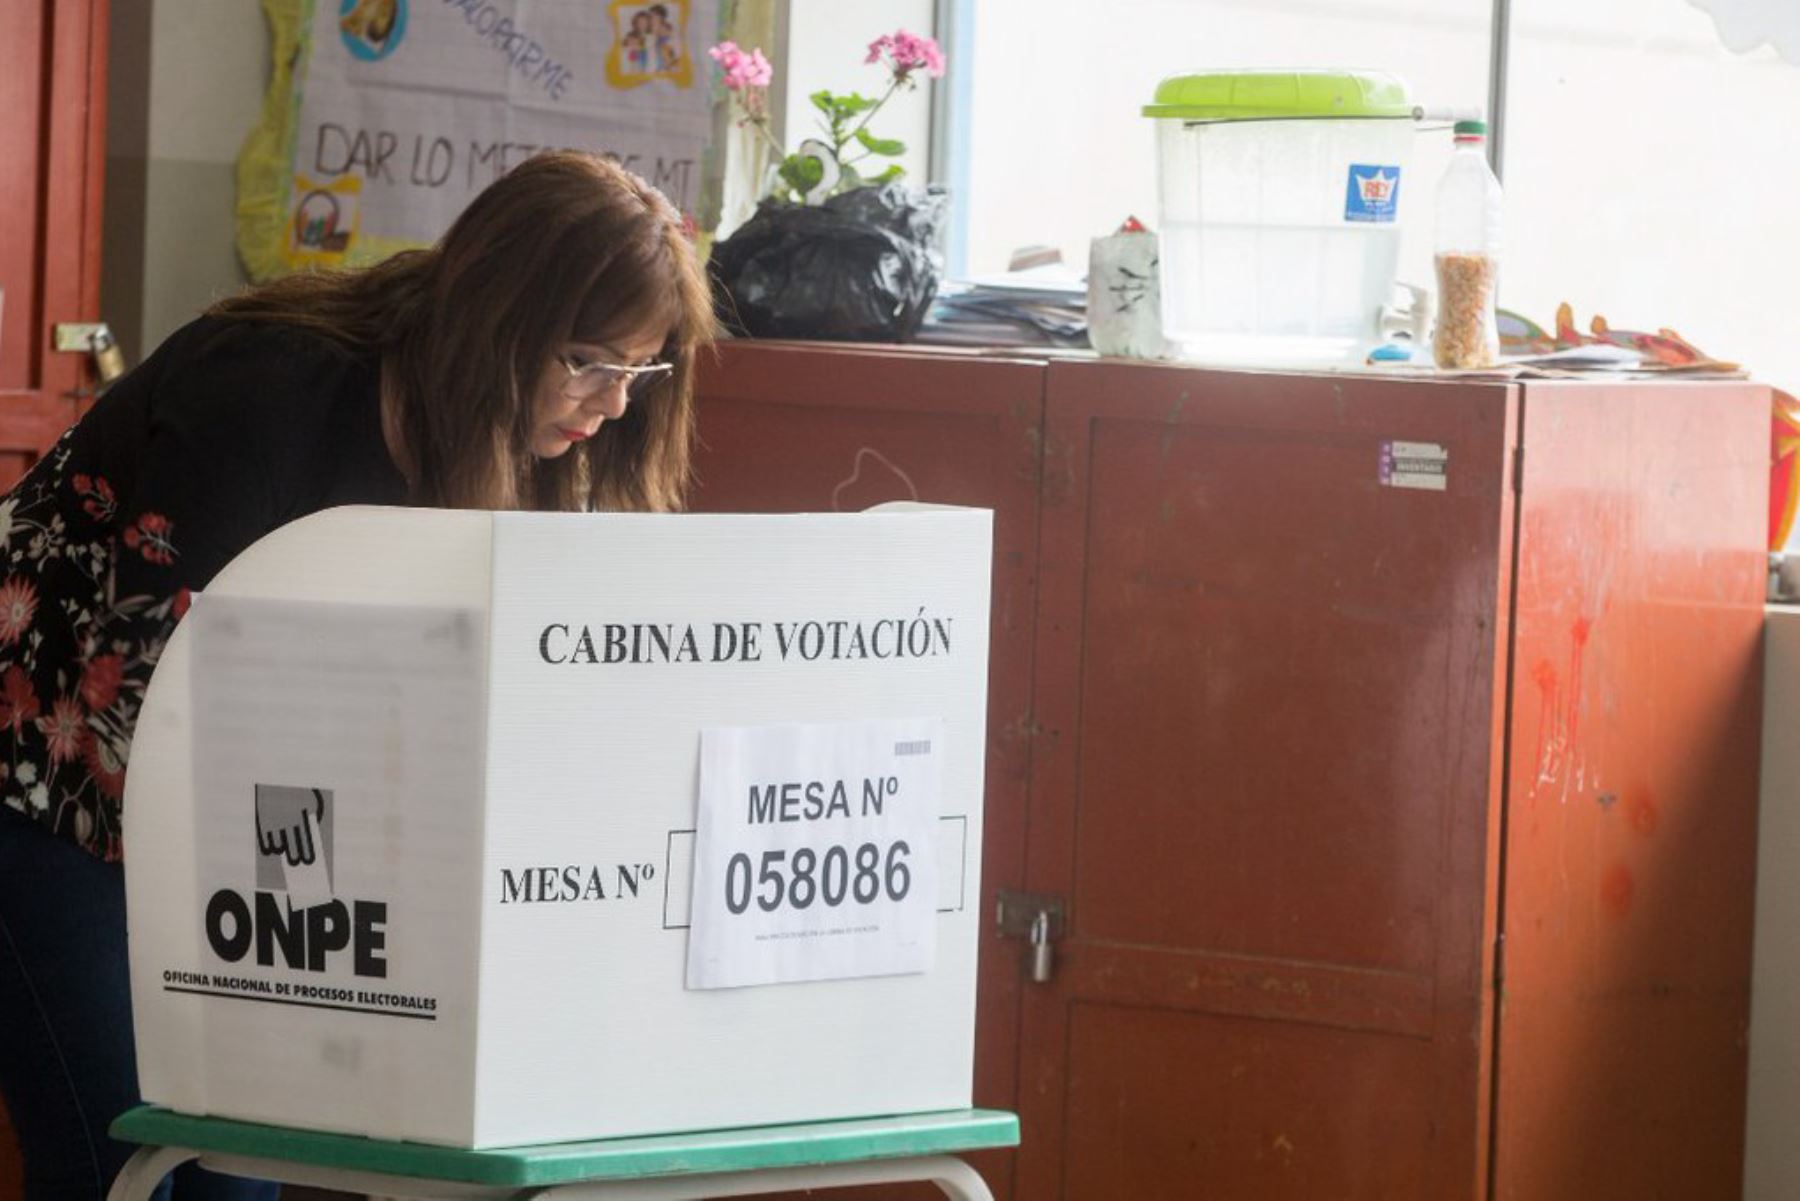 La ministra de Desarrollo e Inclusión Social, Liliana La Rosa, acudió esta mañana a votar en un centro educativo de la ciudad de Huacho y cumplir con su deber como ciudadana, en el marco de las Elecciones Regionales y Municipales 2018.